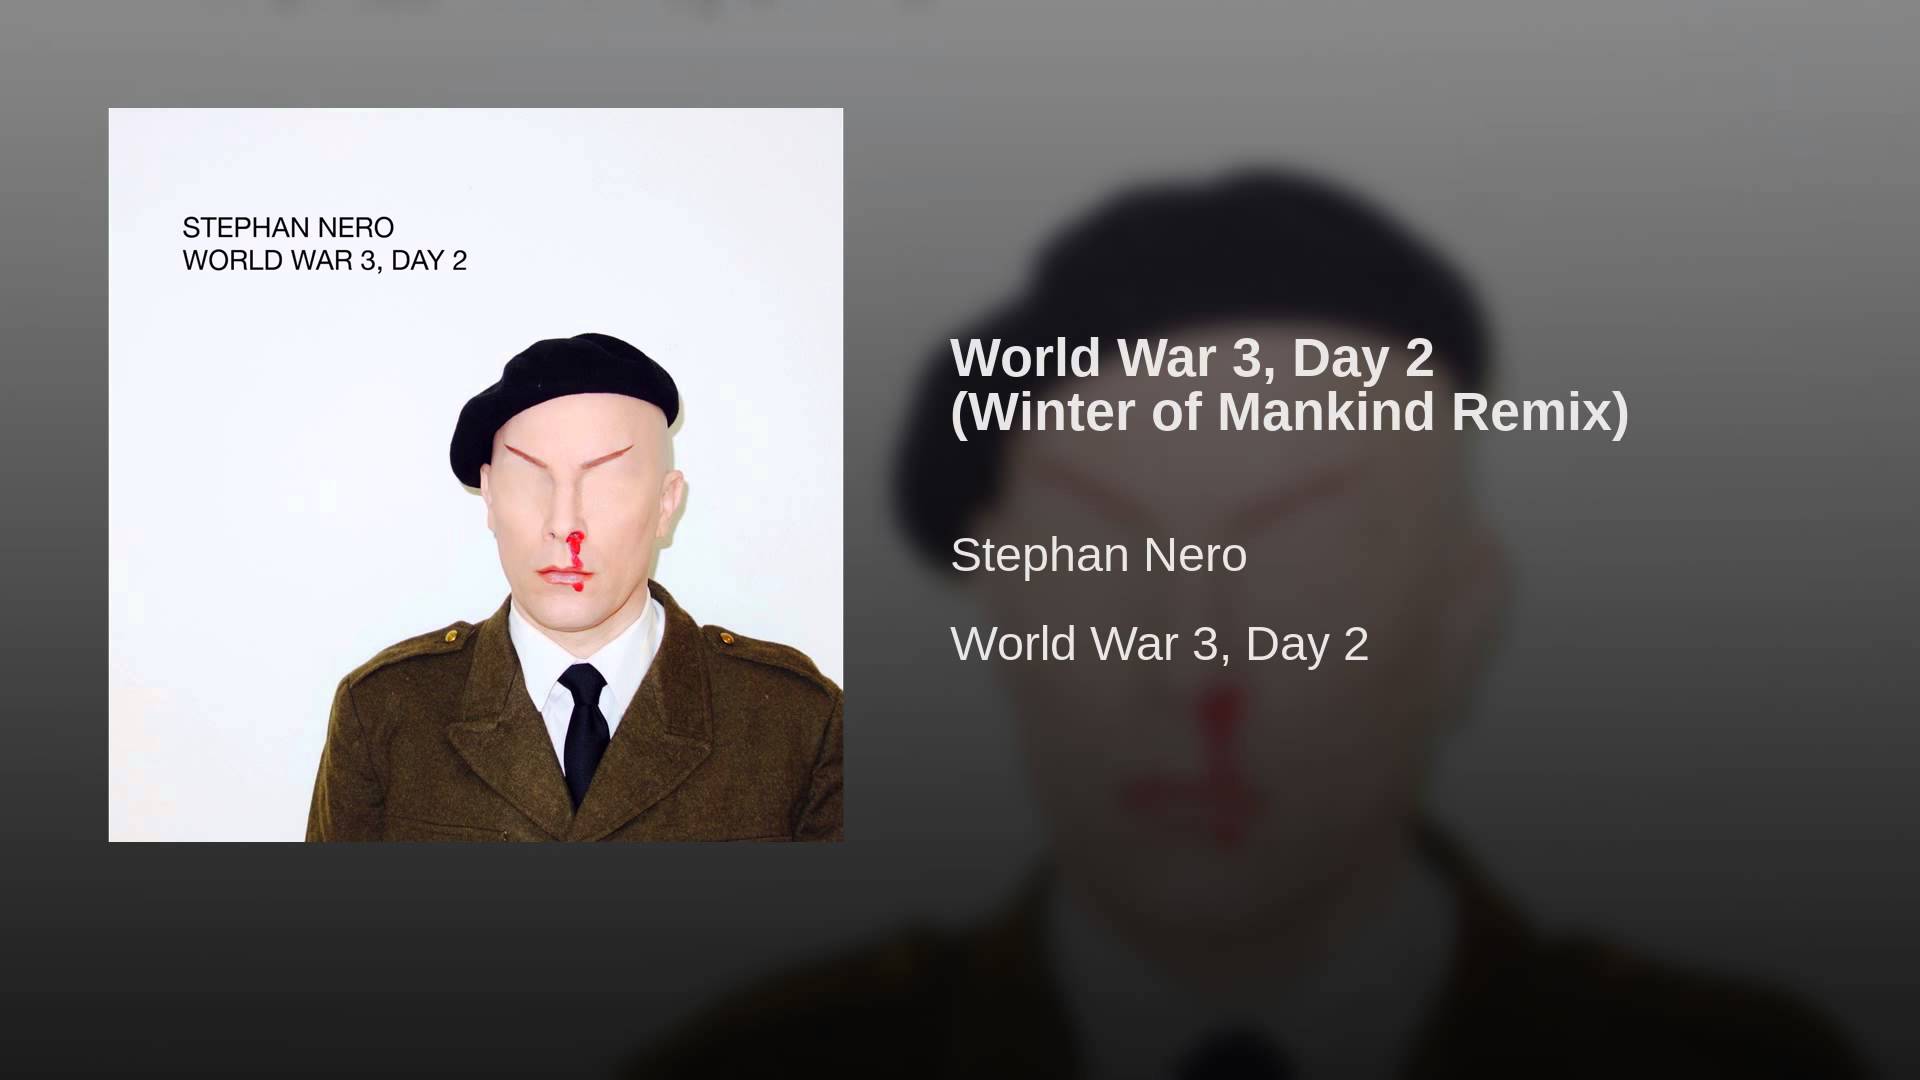 World War 3, Day 2 (Winter of Mankind Remix)